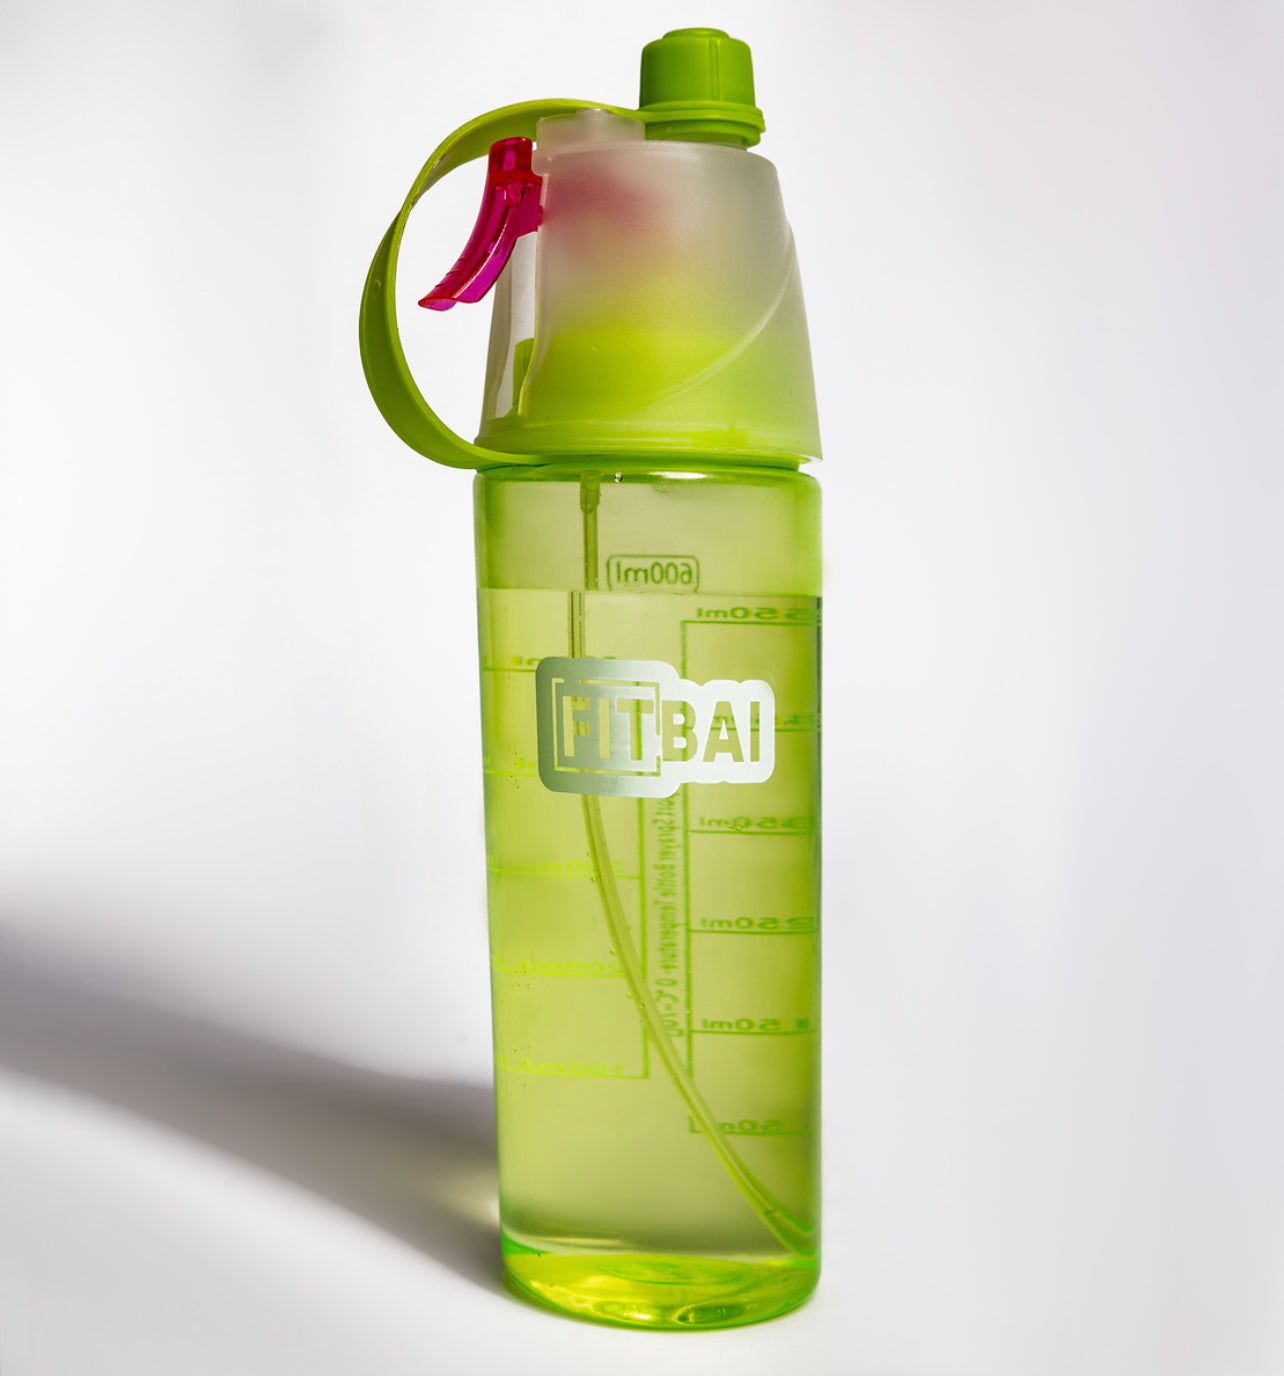 FitBai 2 in 1 Water bottle